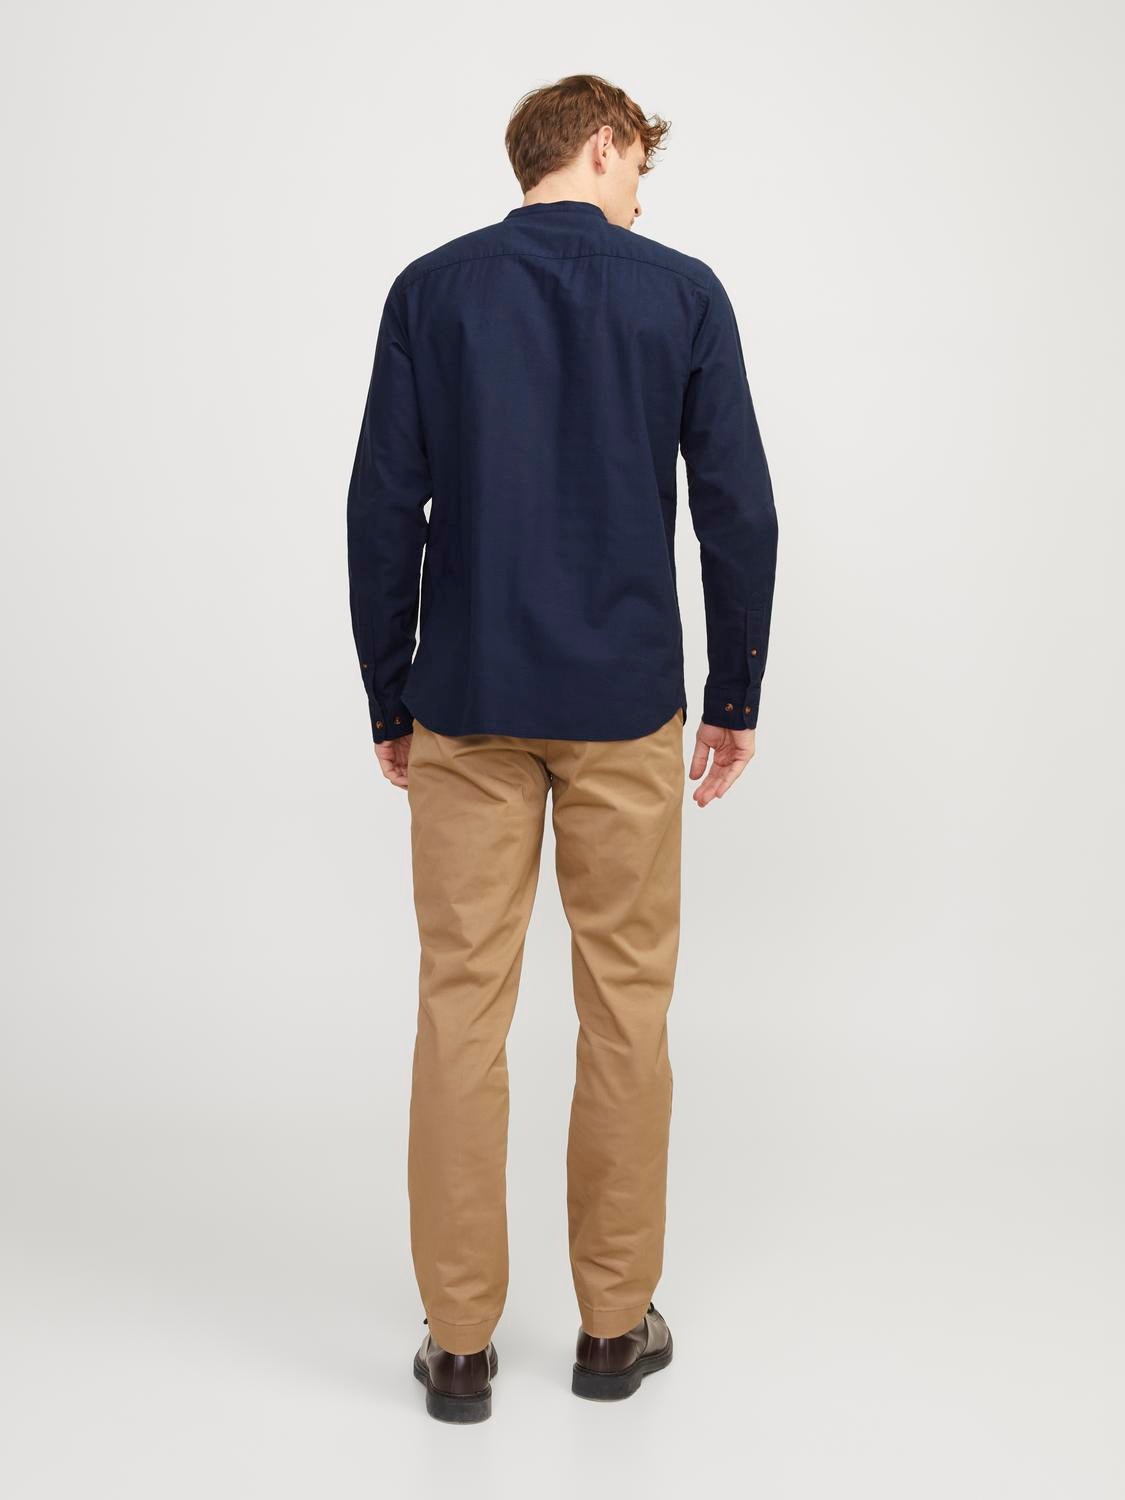 Jack & Jones Comfort Fit Shirt -Navy Blazer - 12248410